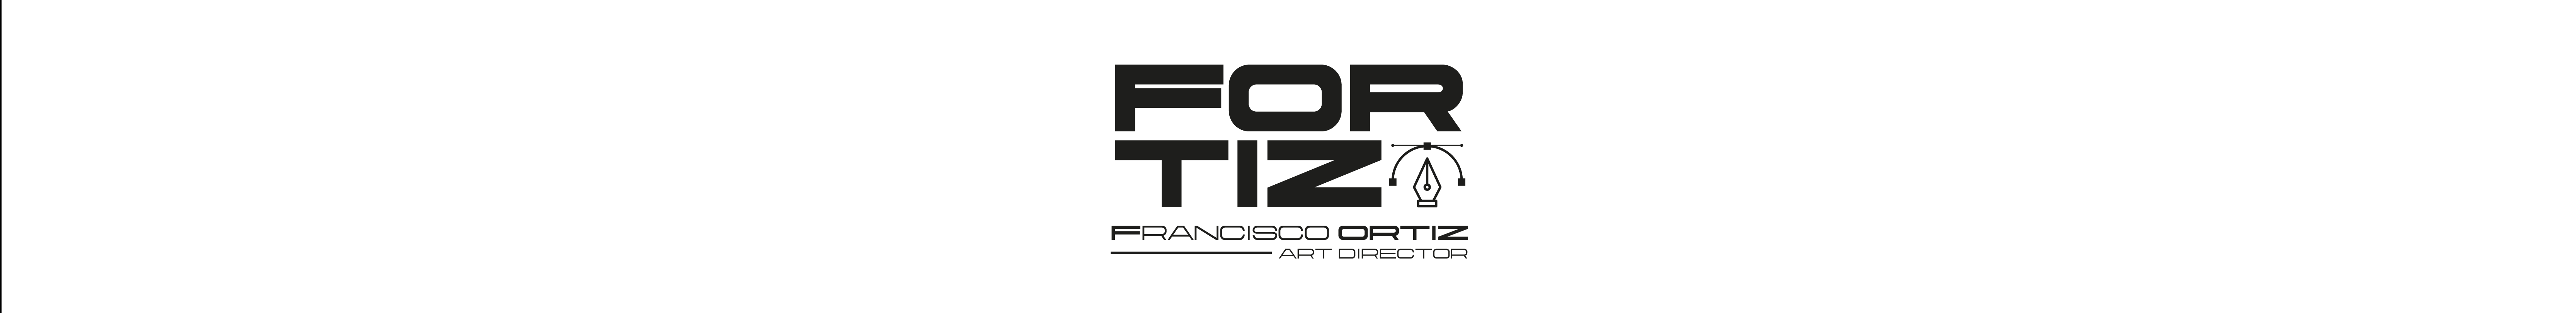 Banner de perfil de Francisco Ortiz